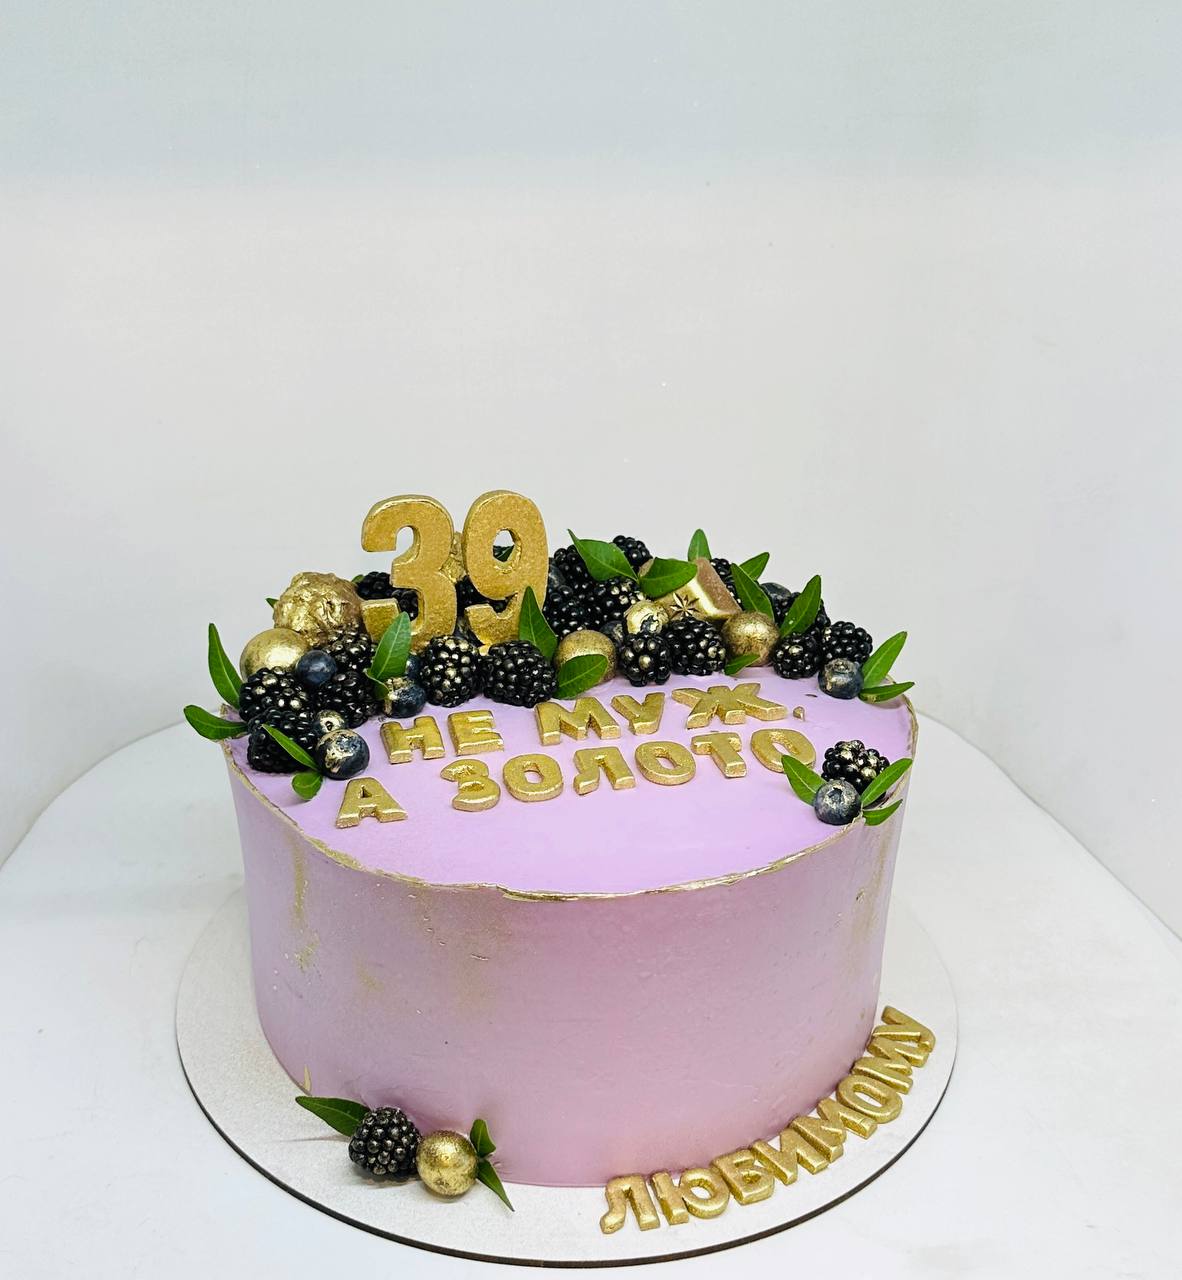 Торт праздничный белоснежный, покрыт кремом и украшен ягодами  голубики и веточками розмарина.